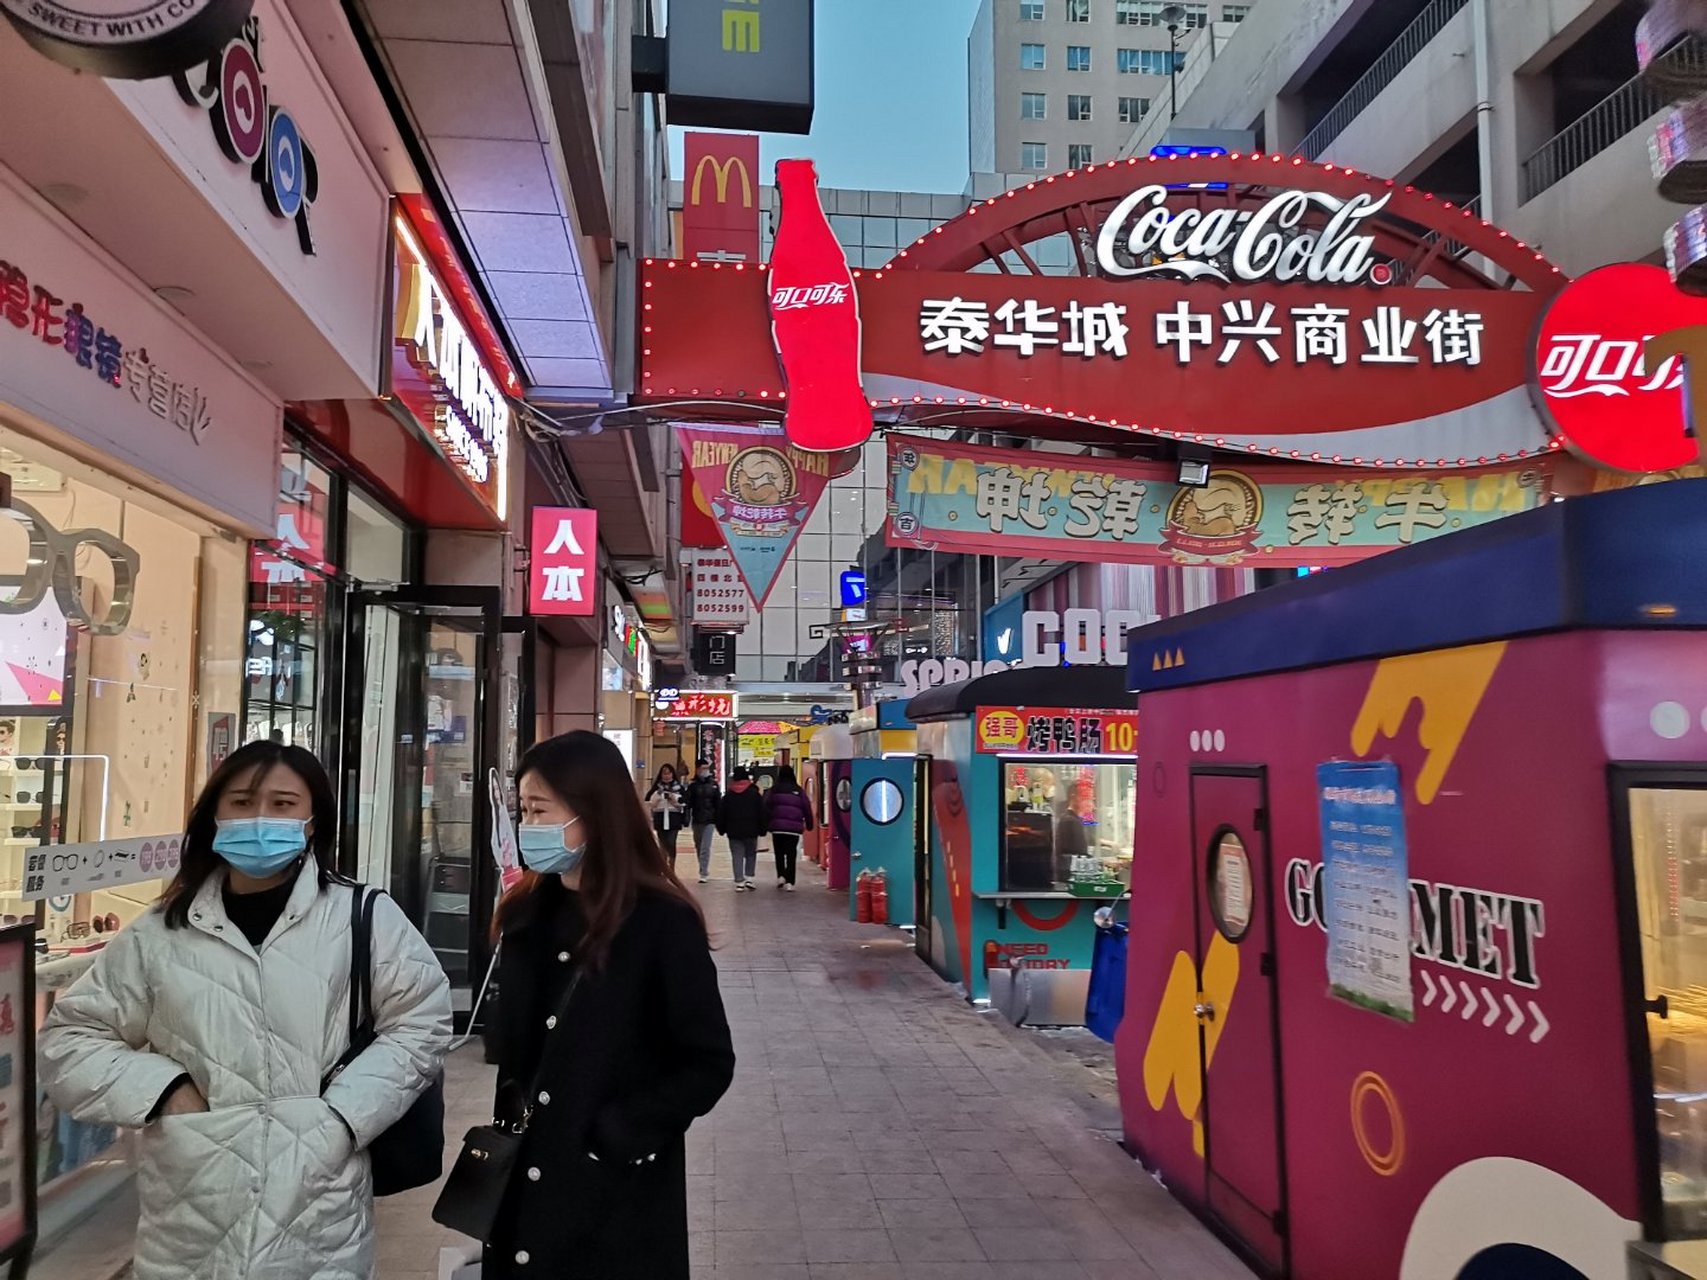 泰华城中兴商业街,潍坊最有特色的一条步行商业街了,可口可乐的广告